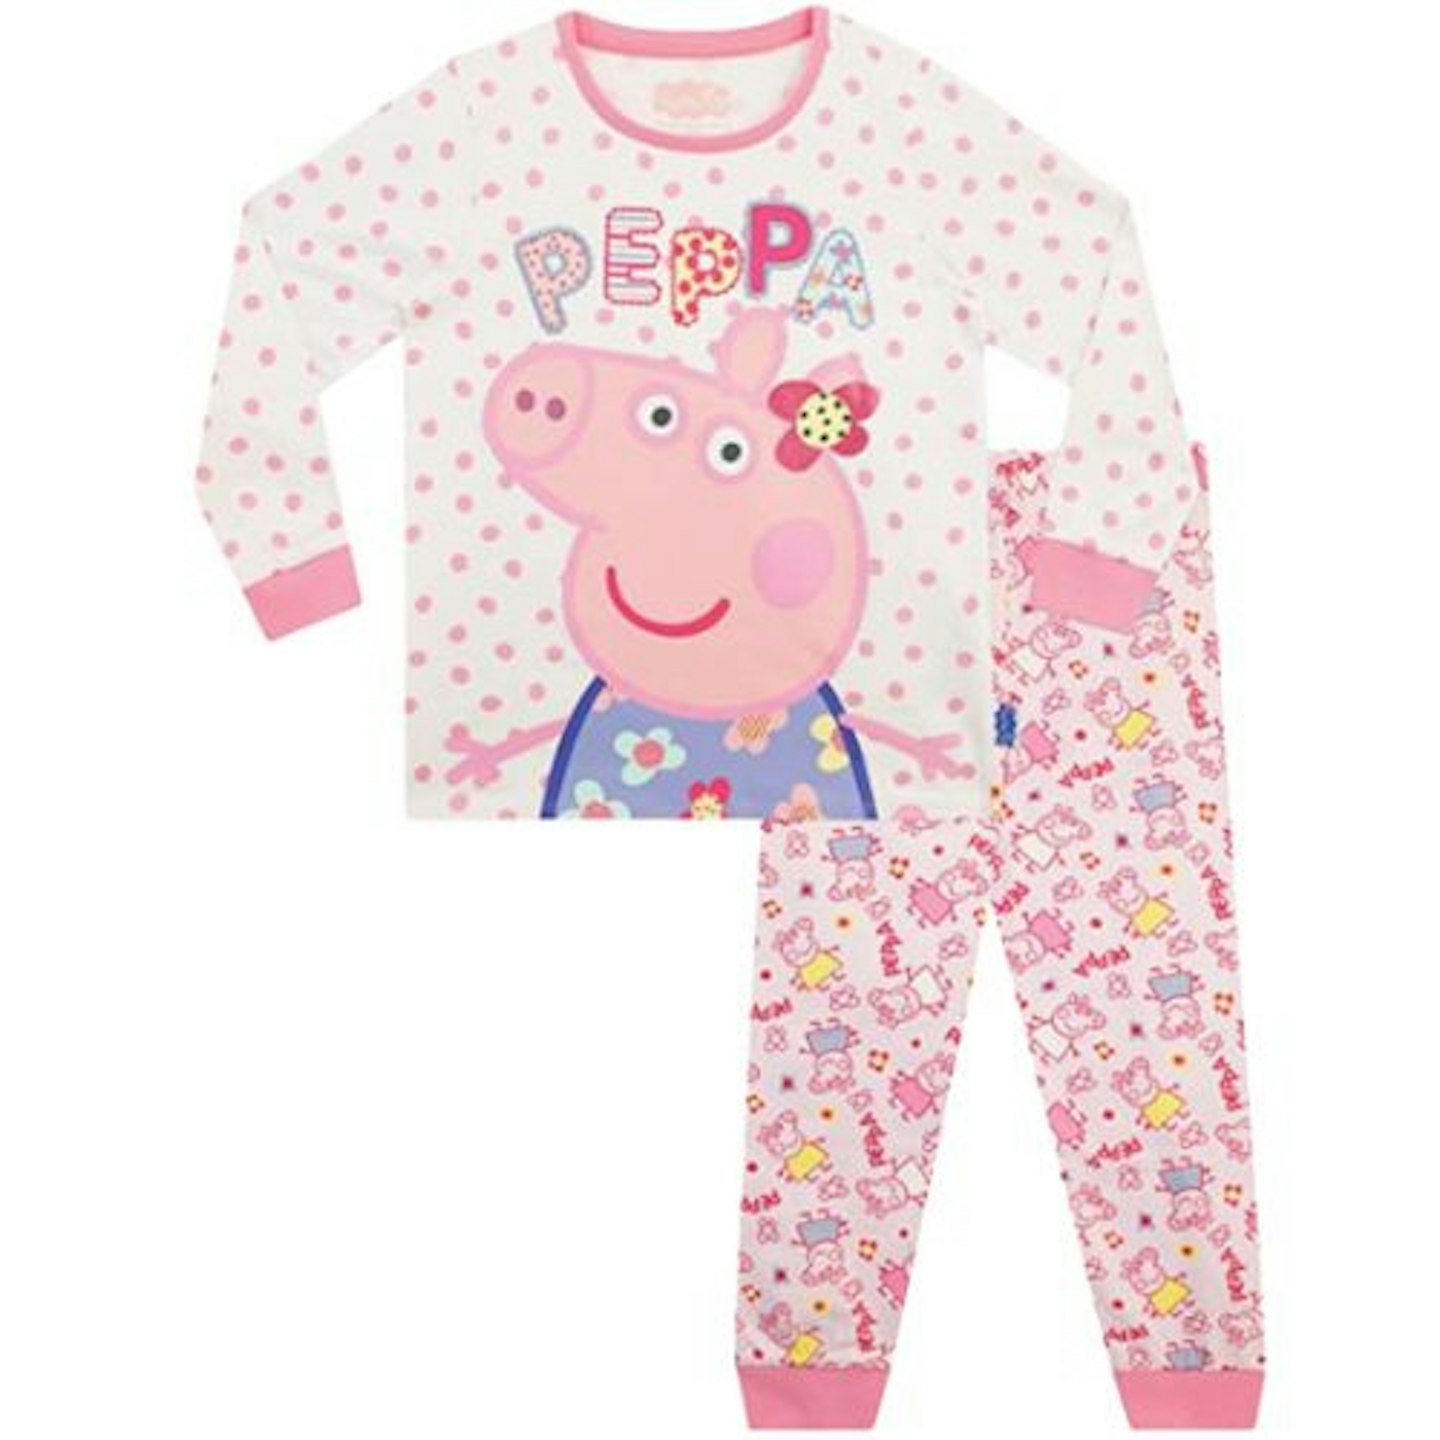 Peppa Pig Girls Pyjamas